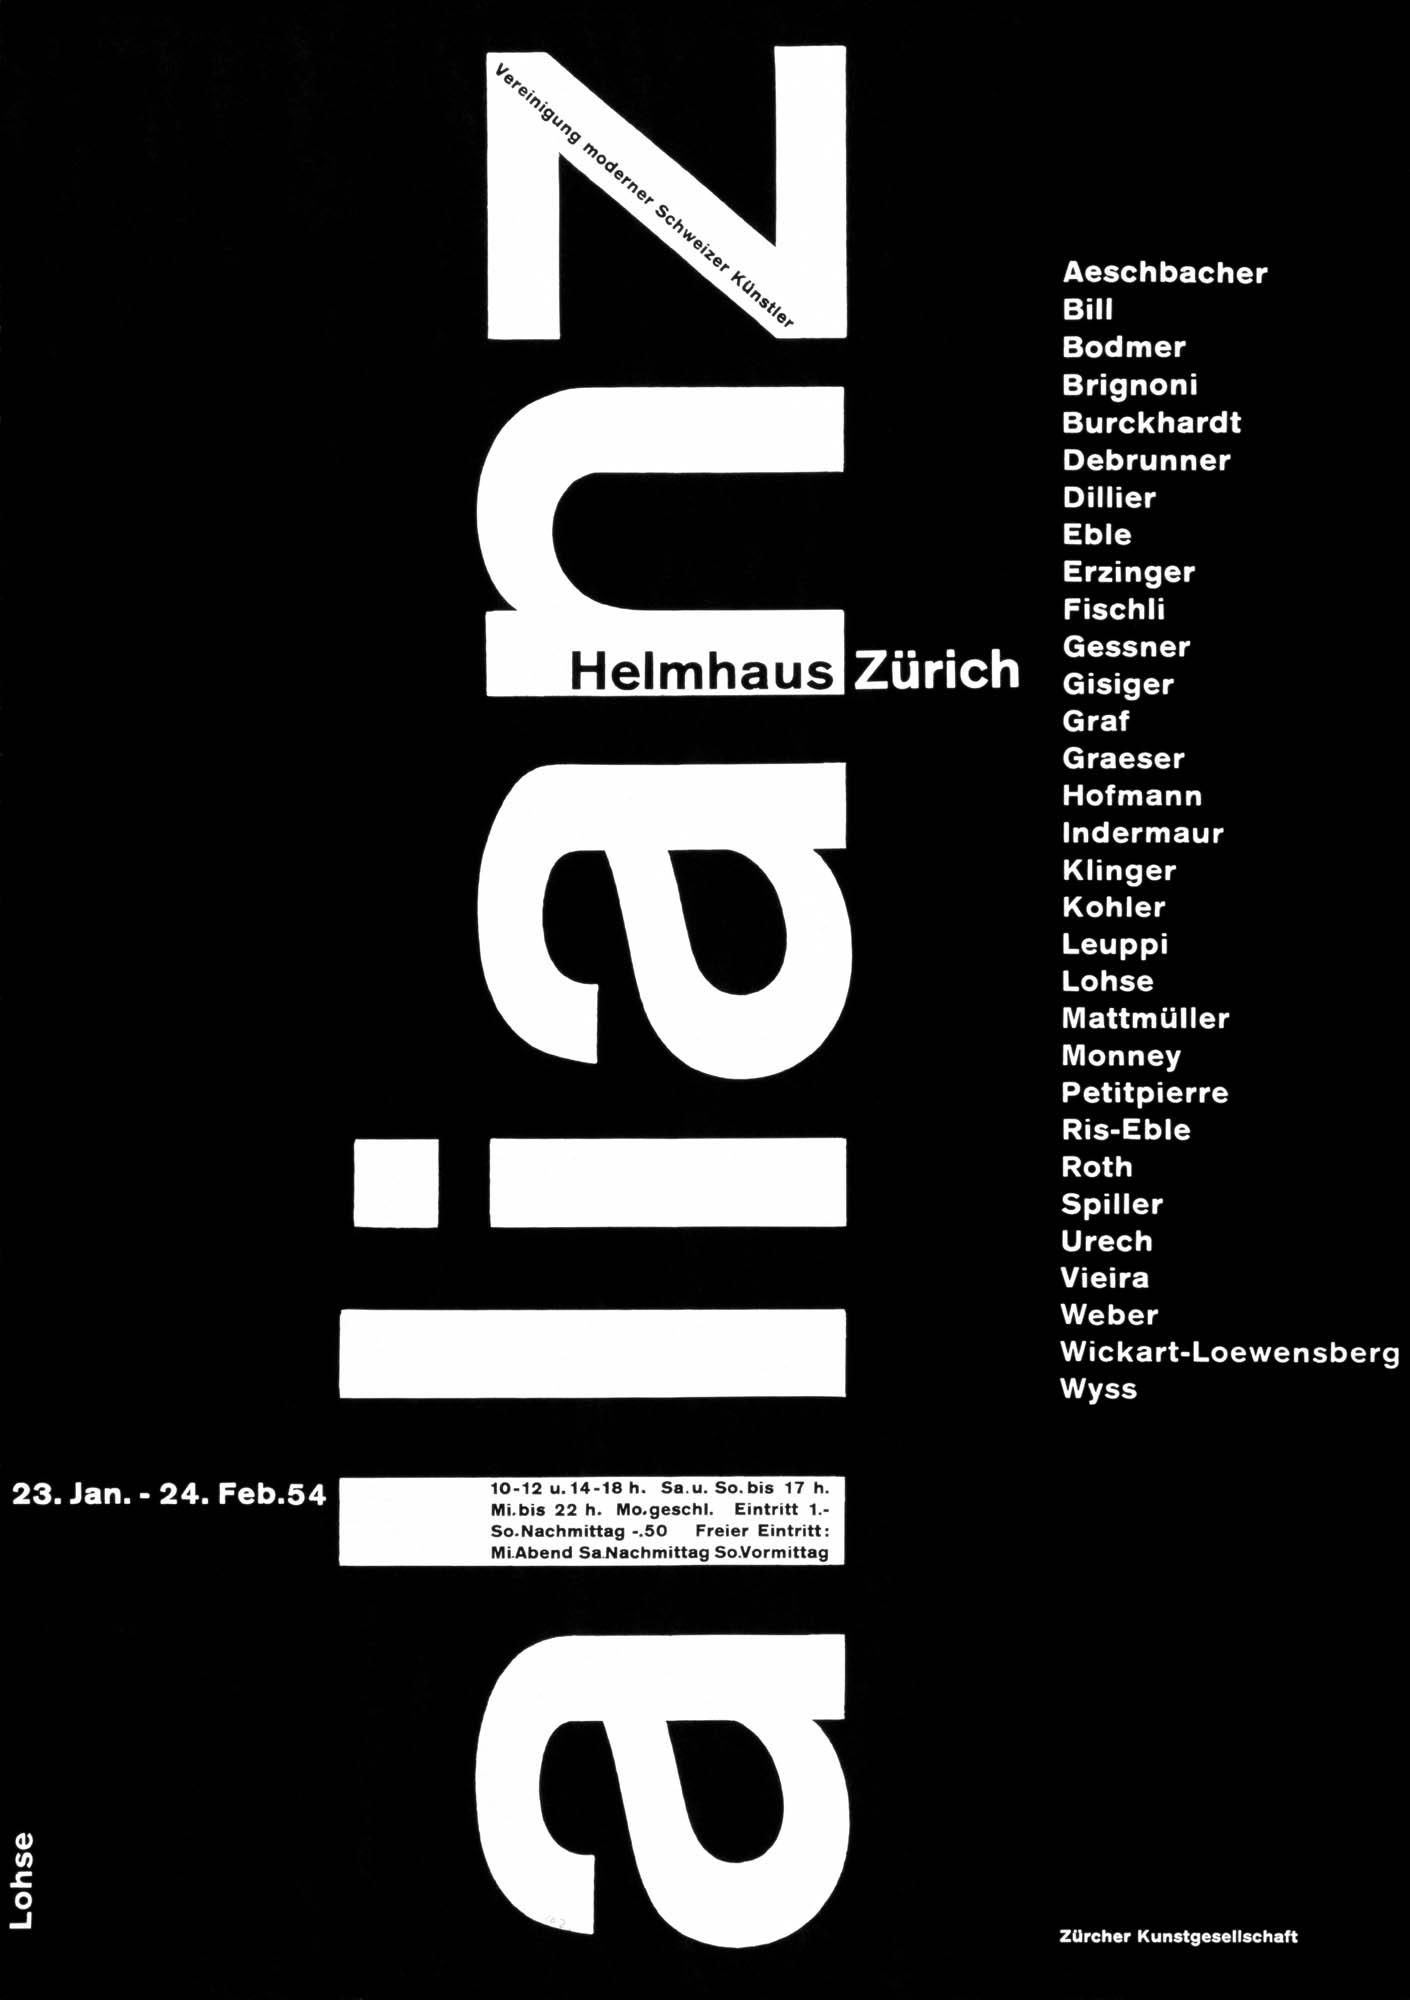 Der Film Josef Müller-Brockmann Poster design sketches